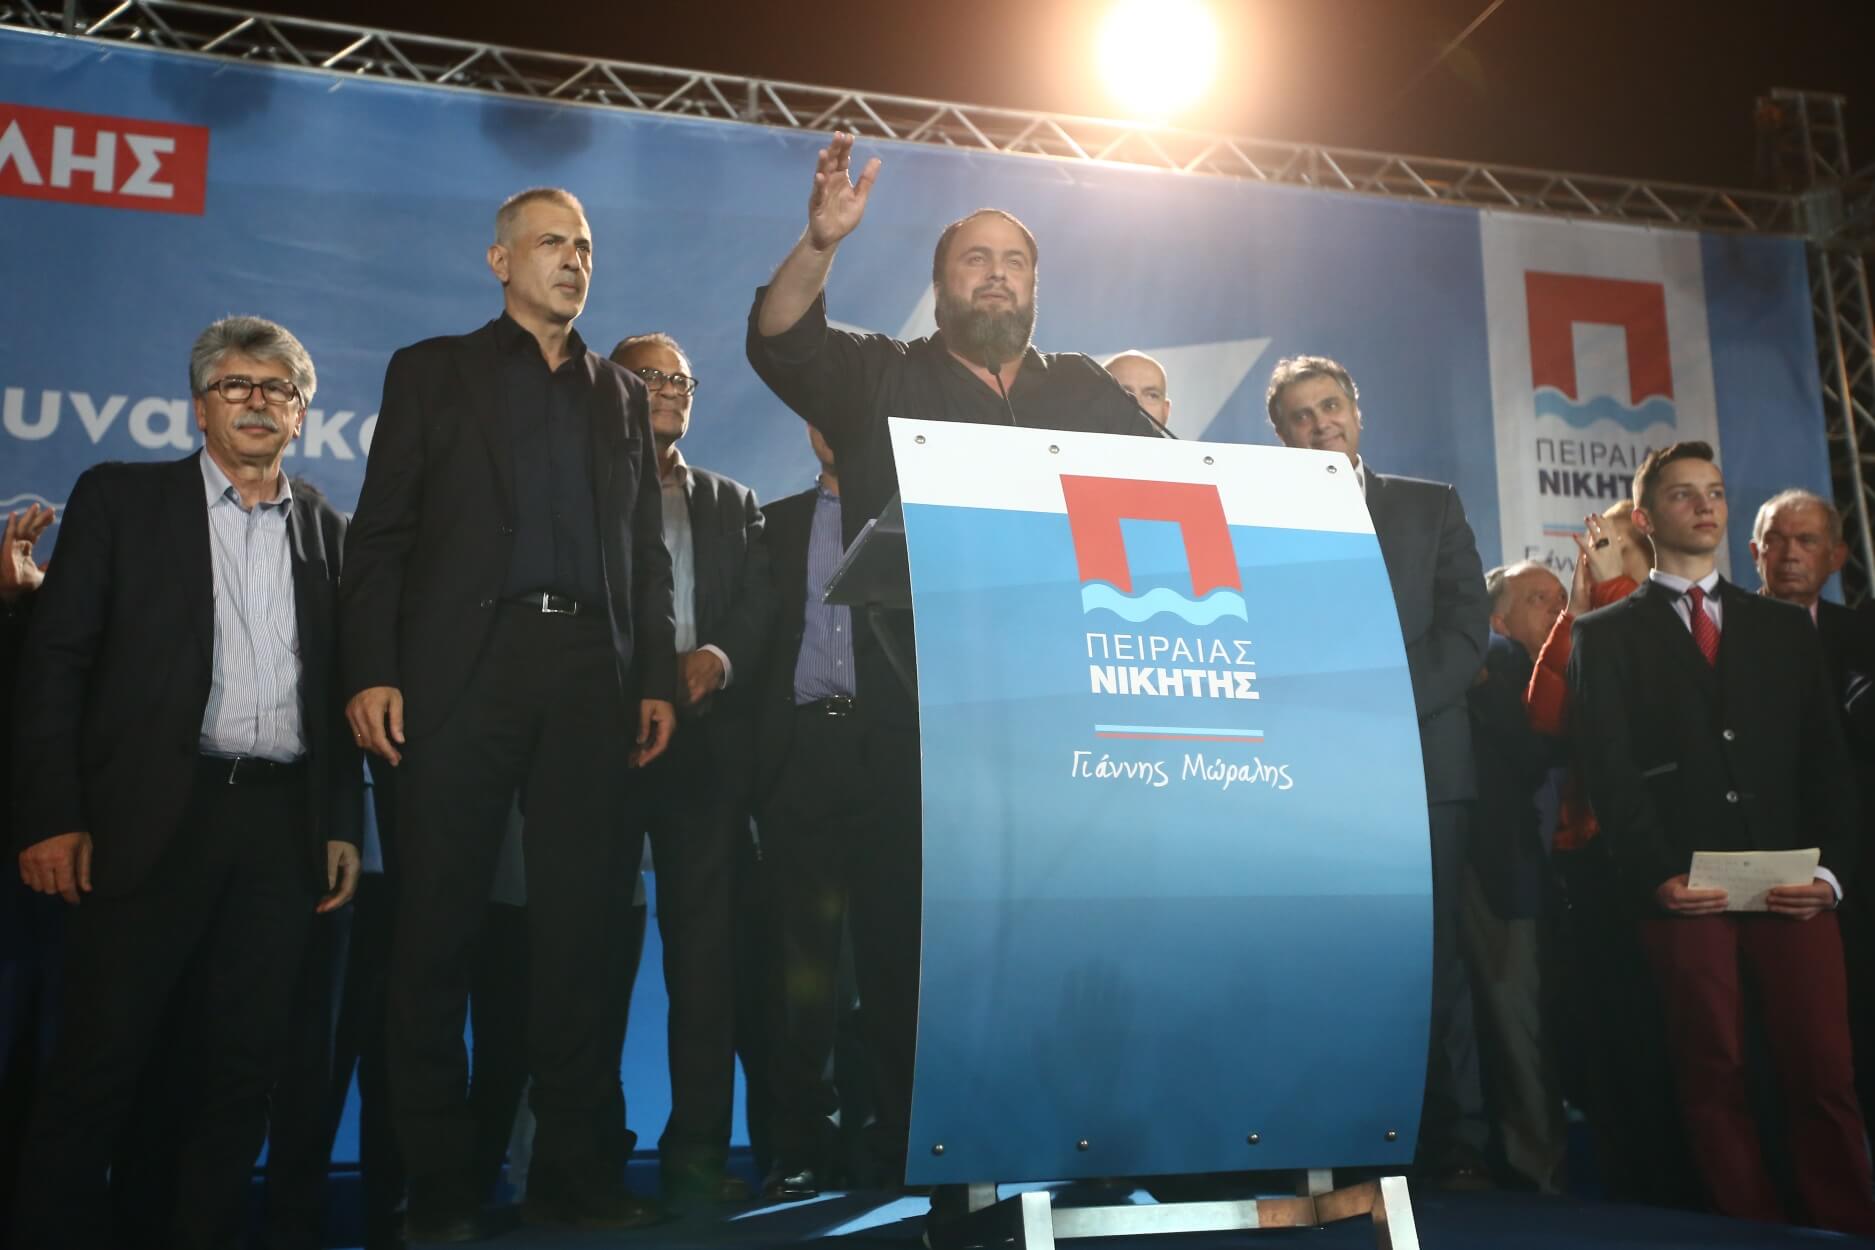 Δημοτικές εκλογές 2019 – Πειραιάς: Ιστορικό αποτέλεσμα για τον Δήμο, λέει ο Μώραλης!